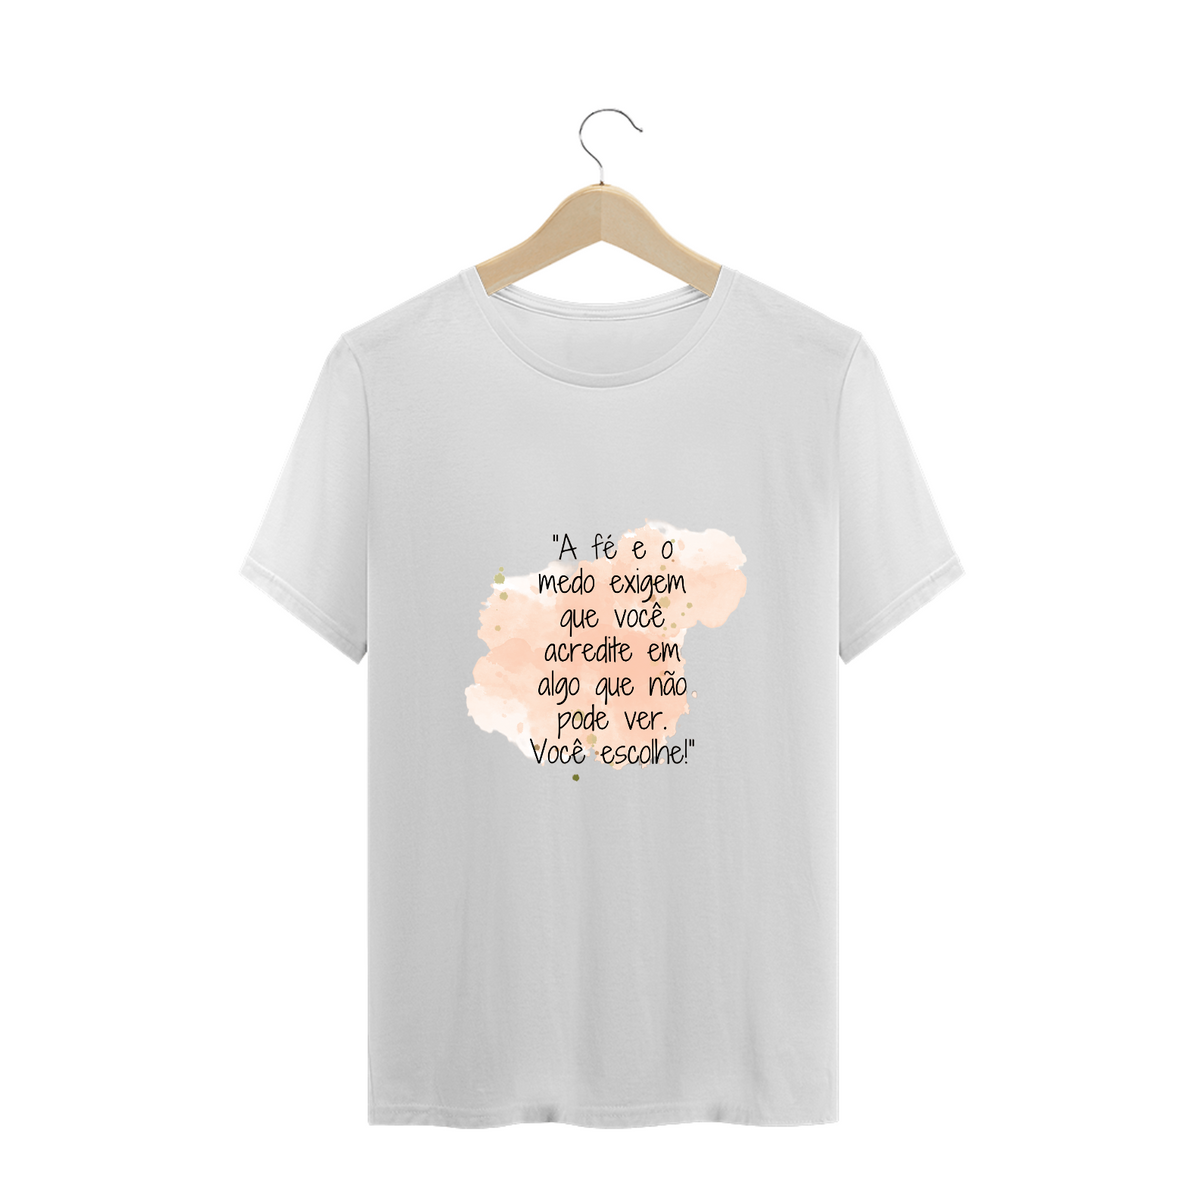 Nome do produto: T-Shirt Plus Size  “A fé e o medo exigem que você acredite em algo que não pode ver. Você escolhe!”